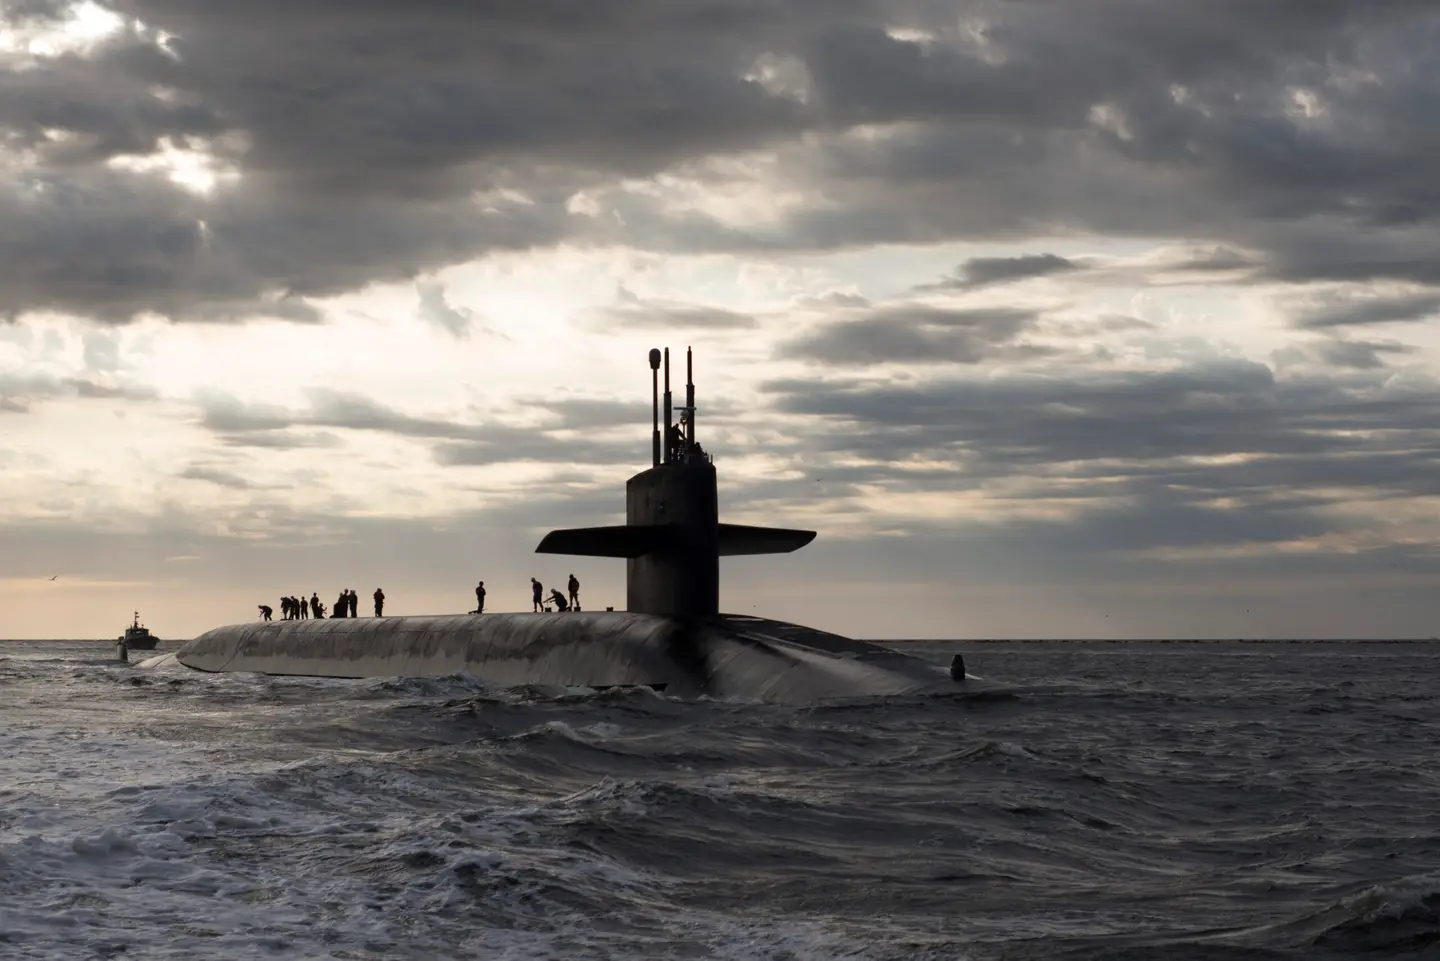 Gli Stati Uniti invieranno alla Repubblica di Corea sottomarini della classe Ohio con missili balistici Trident II e testate nucleari con una gittata di lancio fino a 12.000 km.